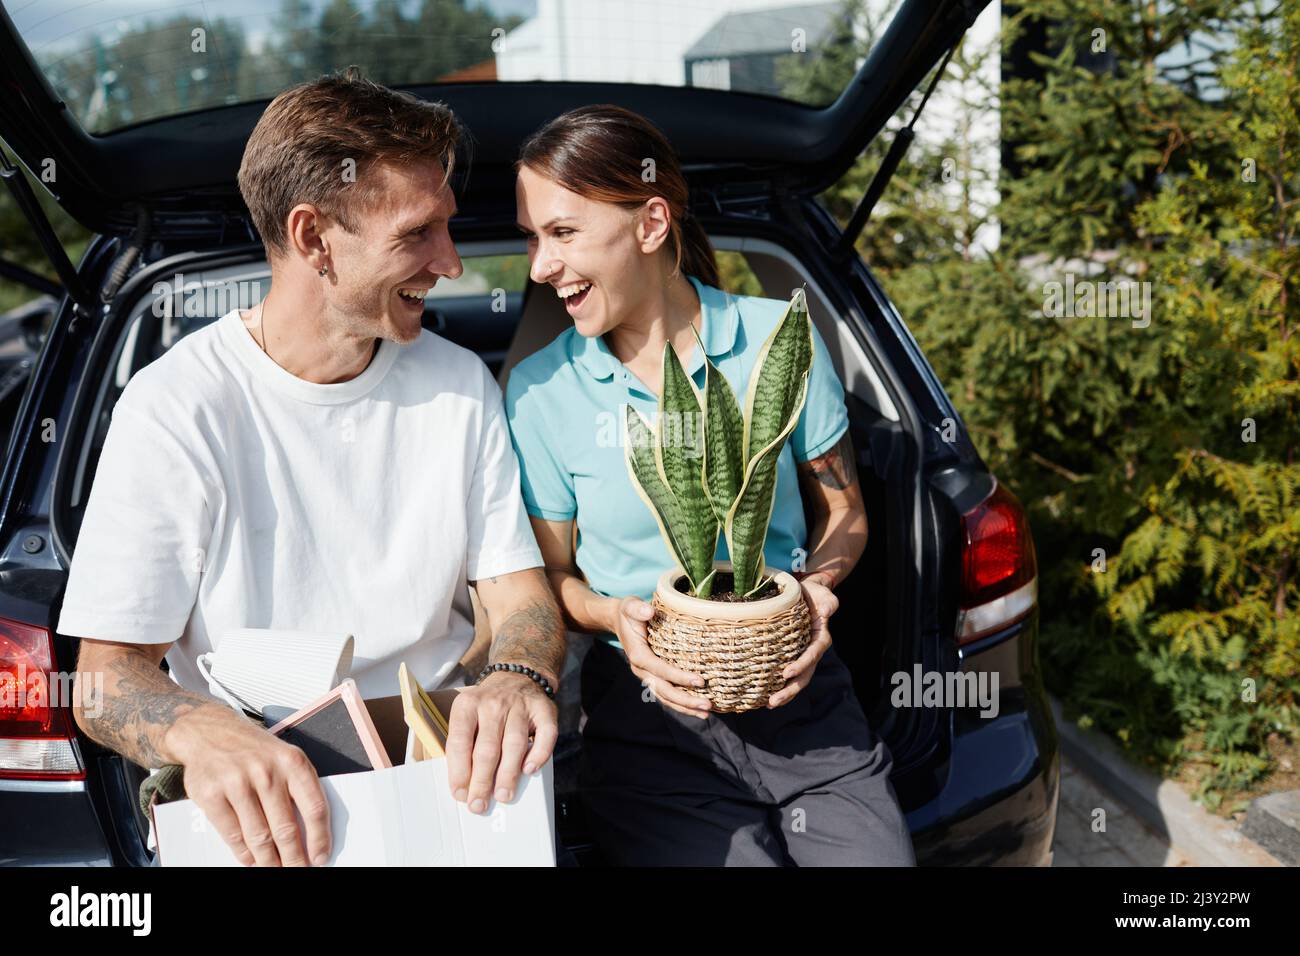 USA, New Jersey, Happy Paare mit Picknick-Korb im Kofferraum eines Autos  sitzen Stockfotografie - Alamy